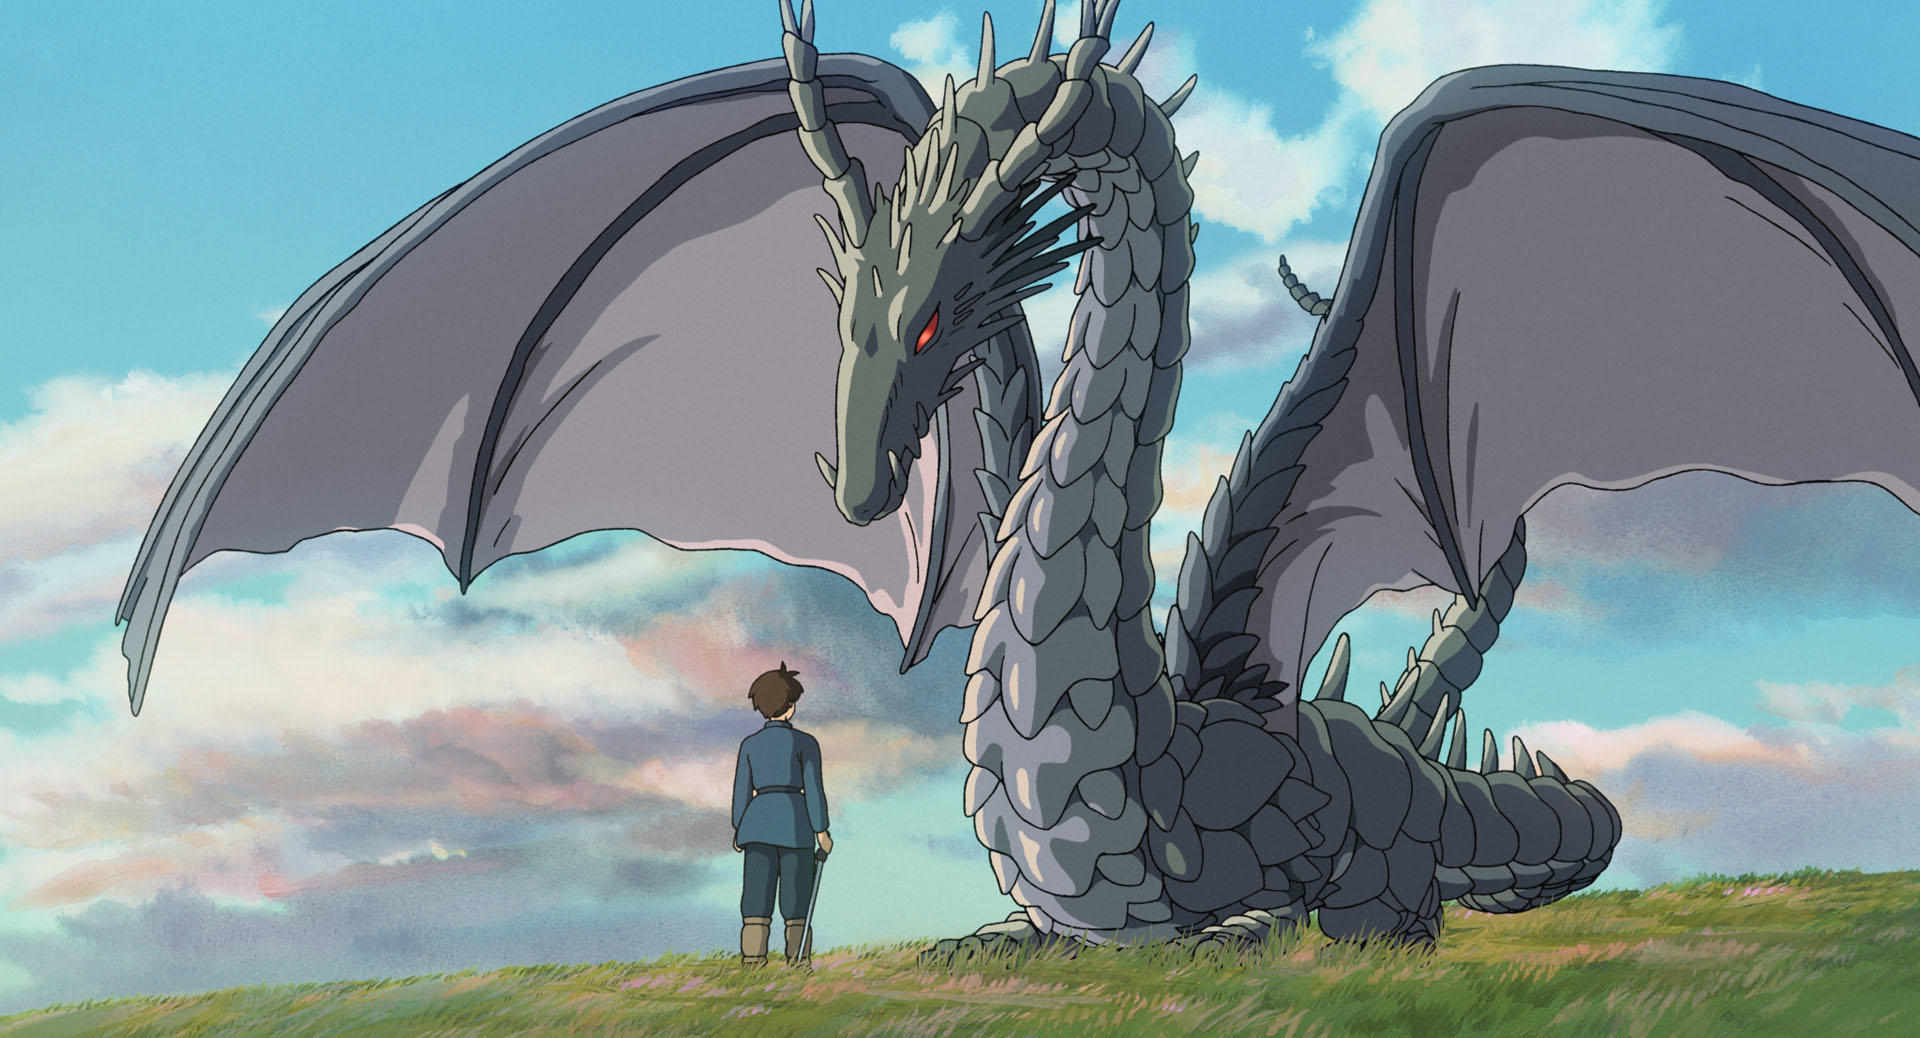 Image: Studio Ghibli